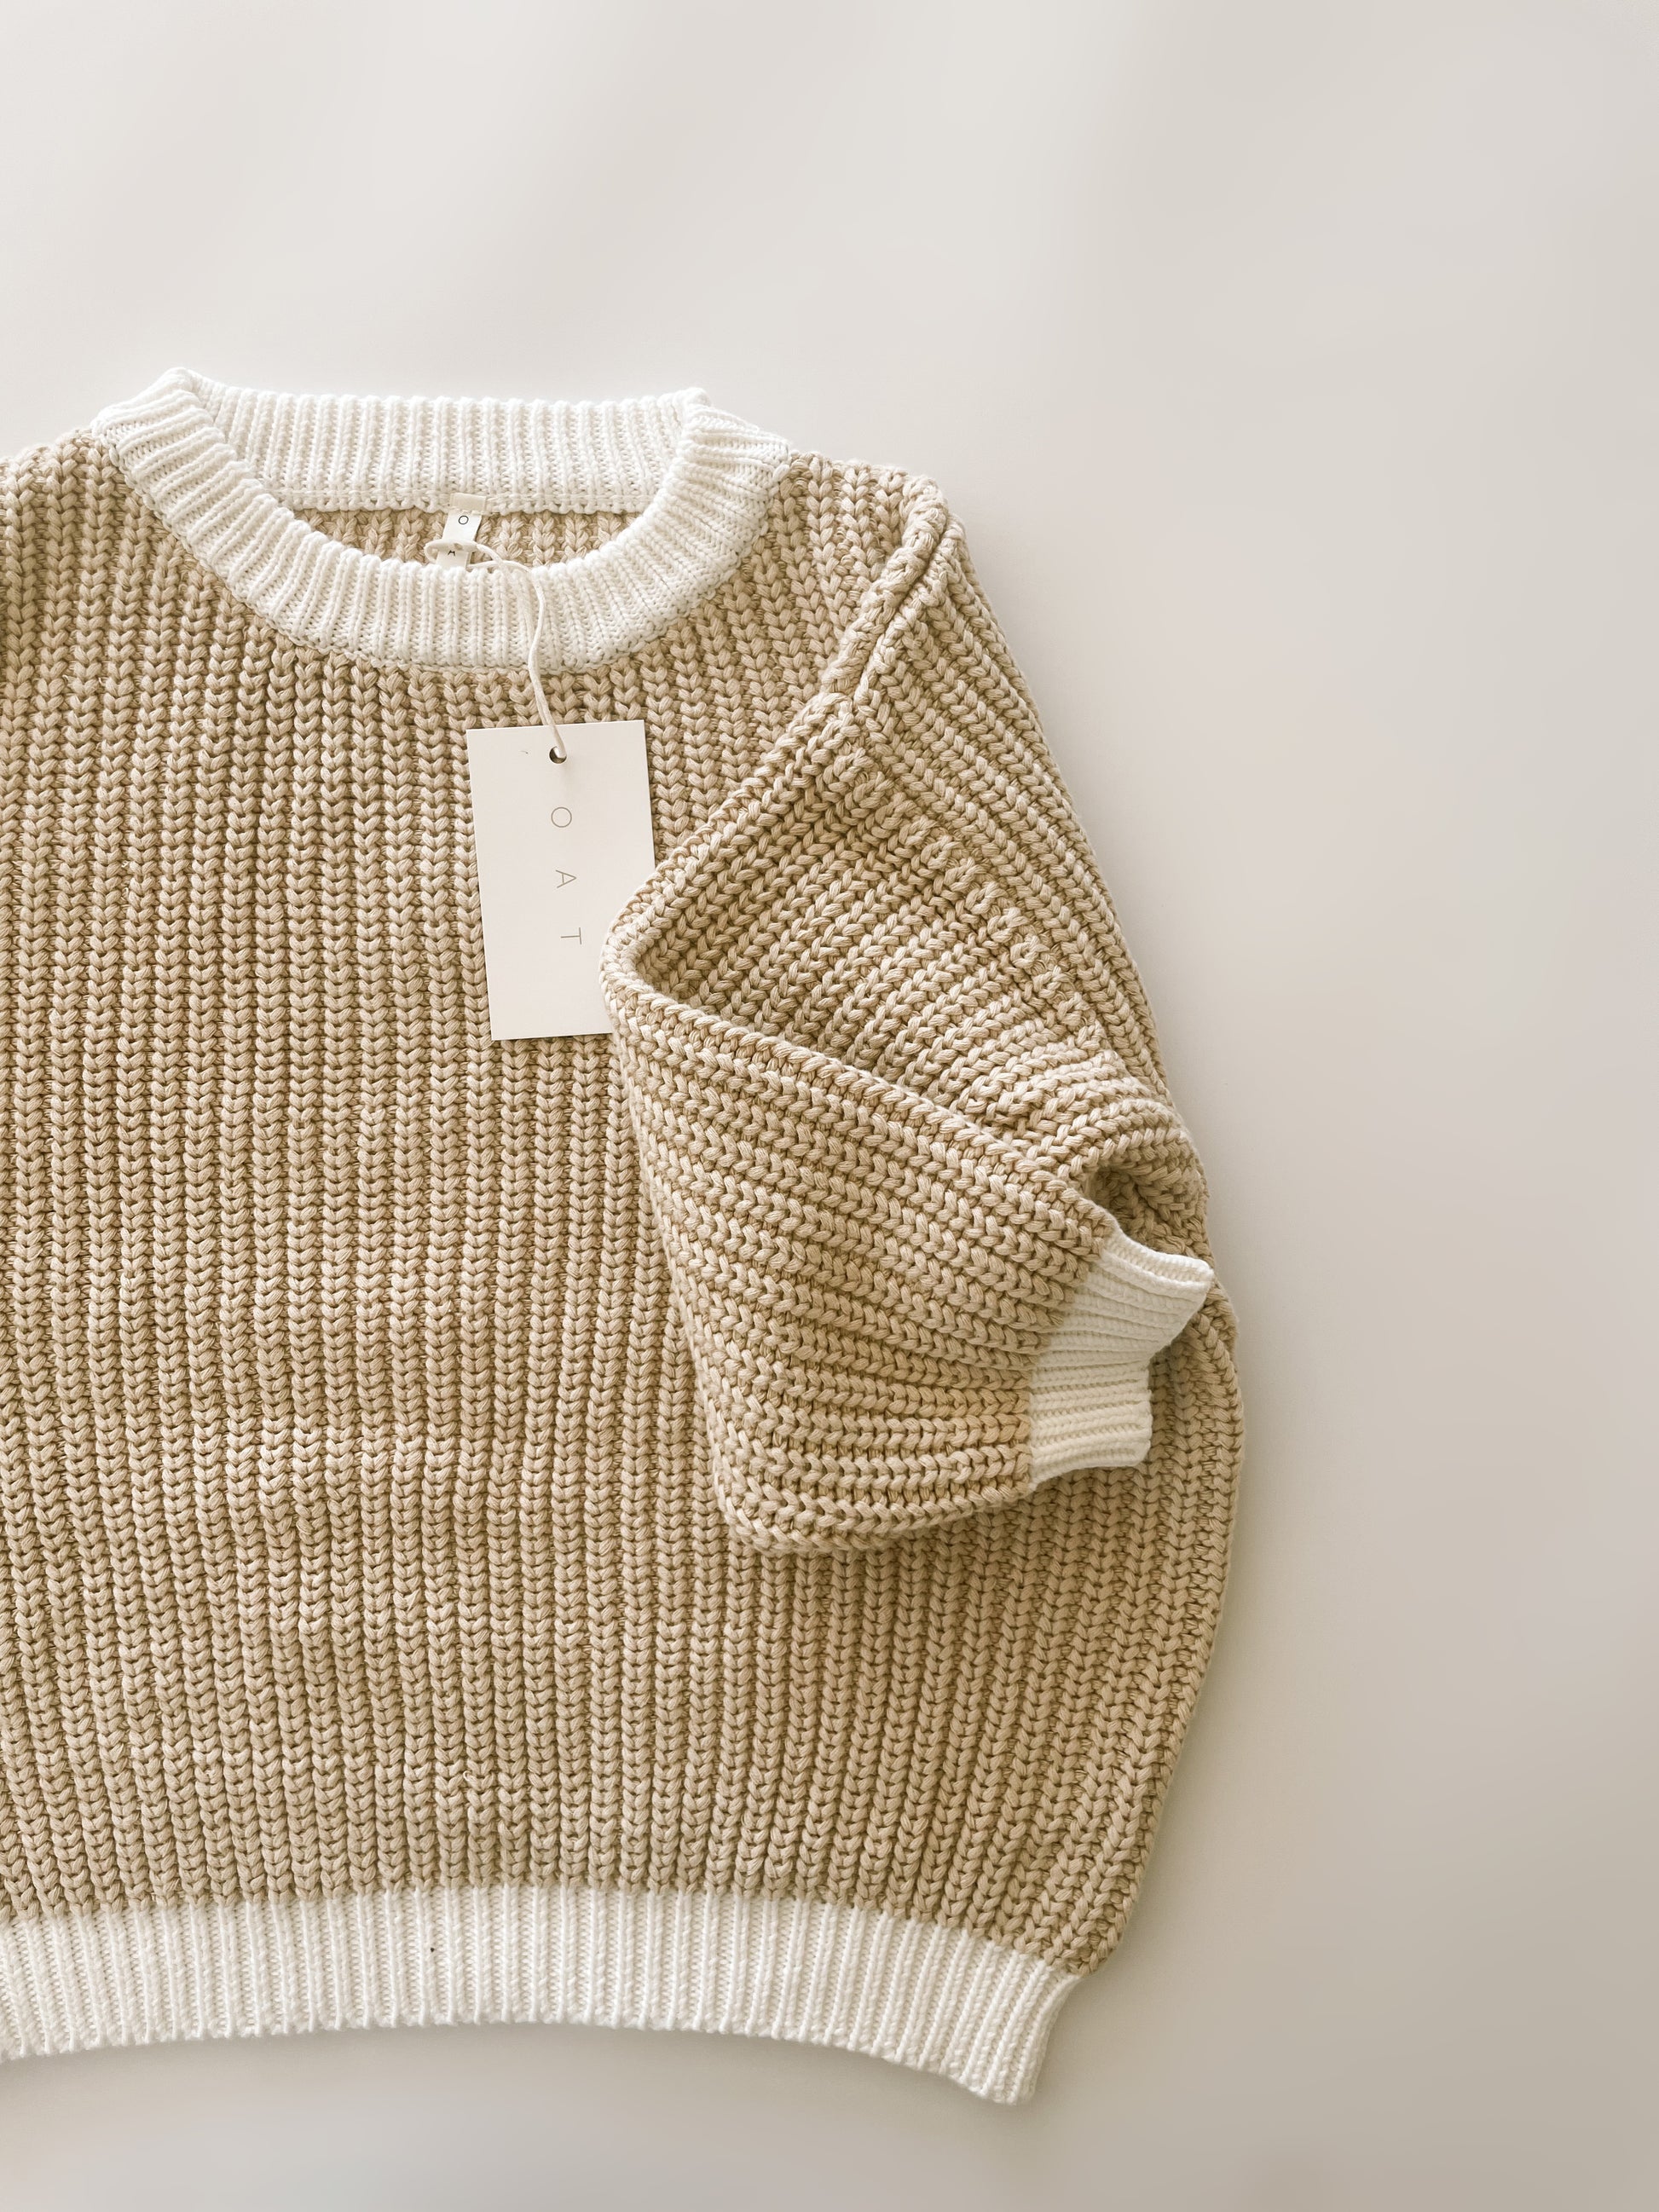 Women's Two-Tone Chunky Knit Sweater – Oat Co